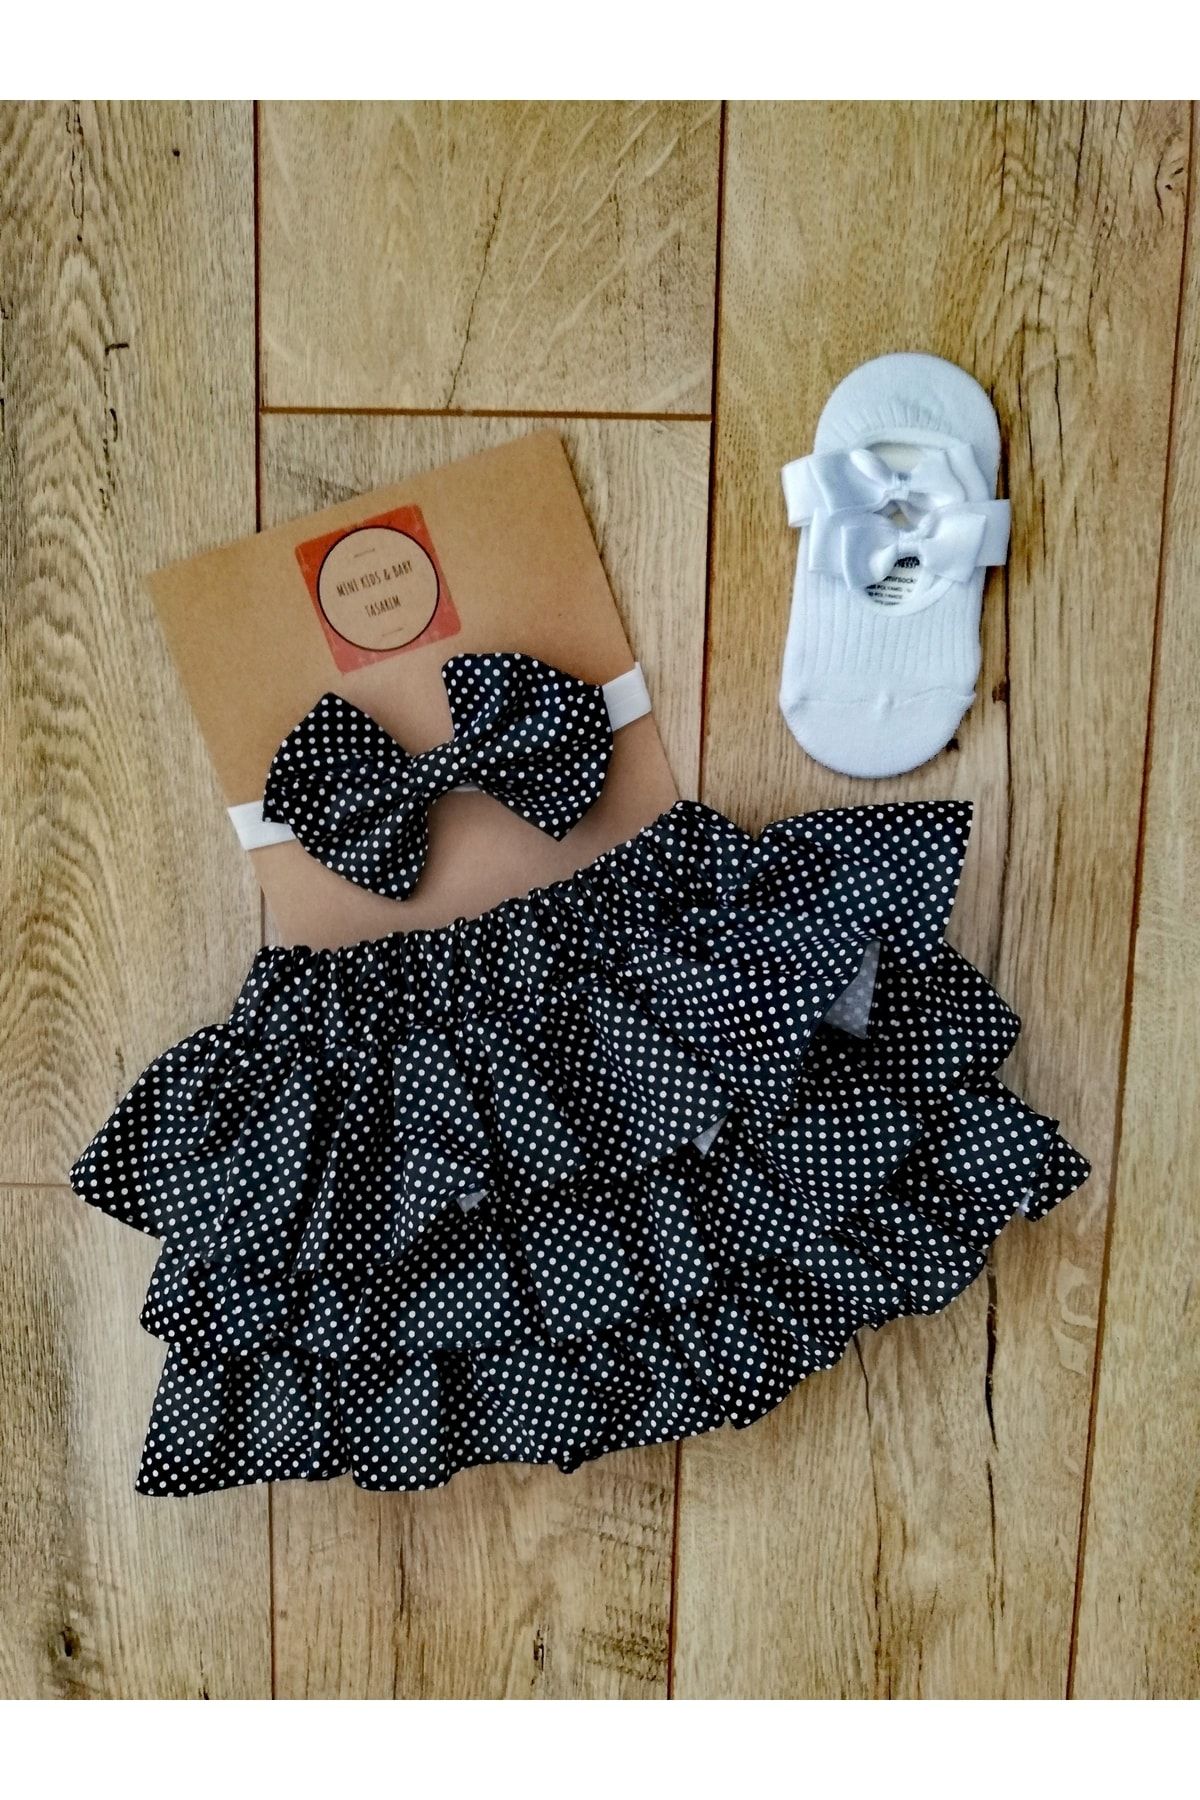 Mini Kids Baby Kız Bebek Puantiyeli Fırfırlı Şort Etek Babet Çorap Bandana Takım